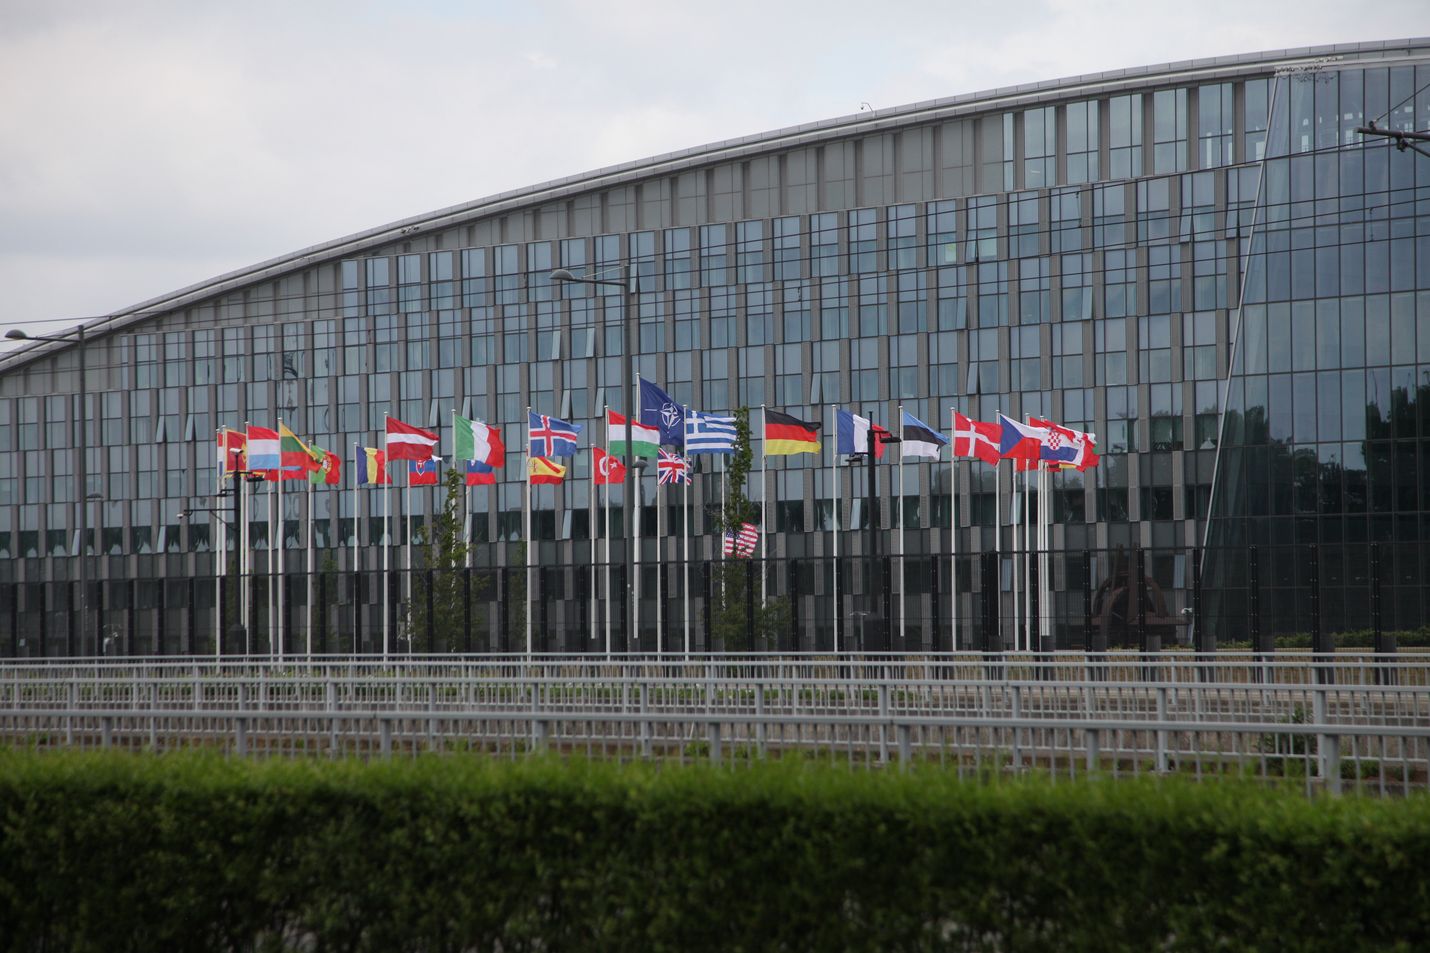 Joidenkin kuukausien päästä Naton päämajan edessä liehuvat todennäköisesti myös Suomen ja Ruotsin liput. Maanantaina Belgian pääkaupungissa katseet olivat kiinnittyneet Pohjolan maiden päätöksentekoon asiasta.